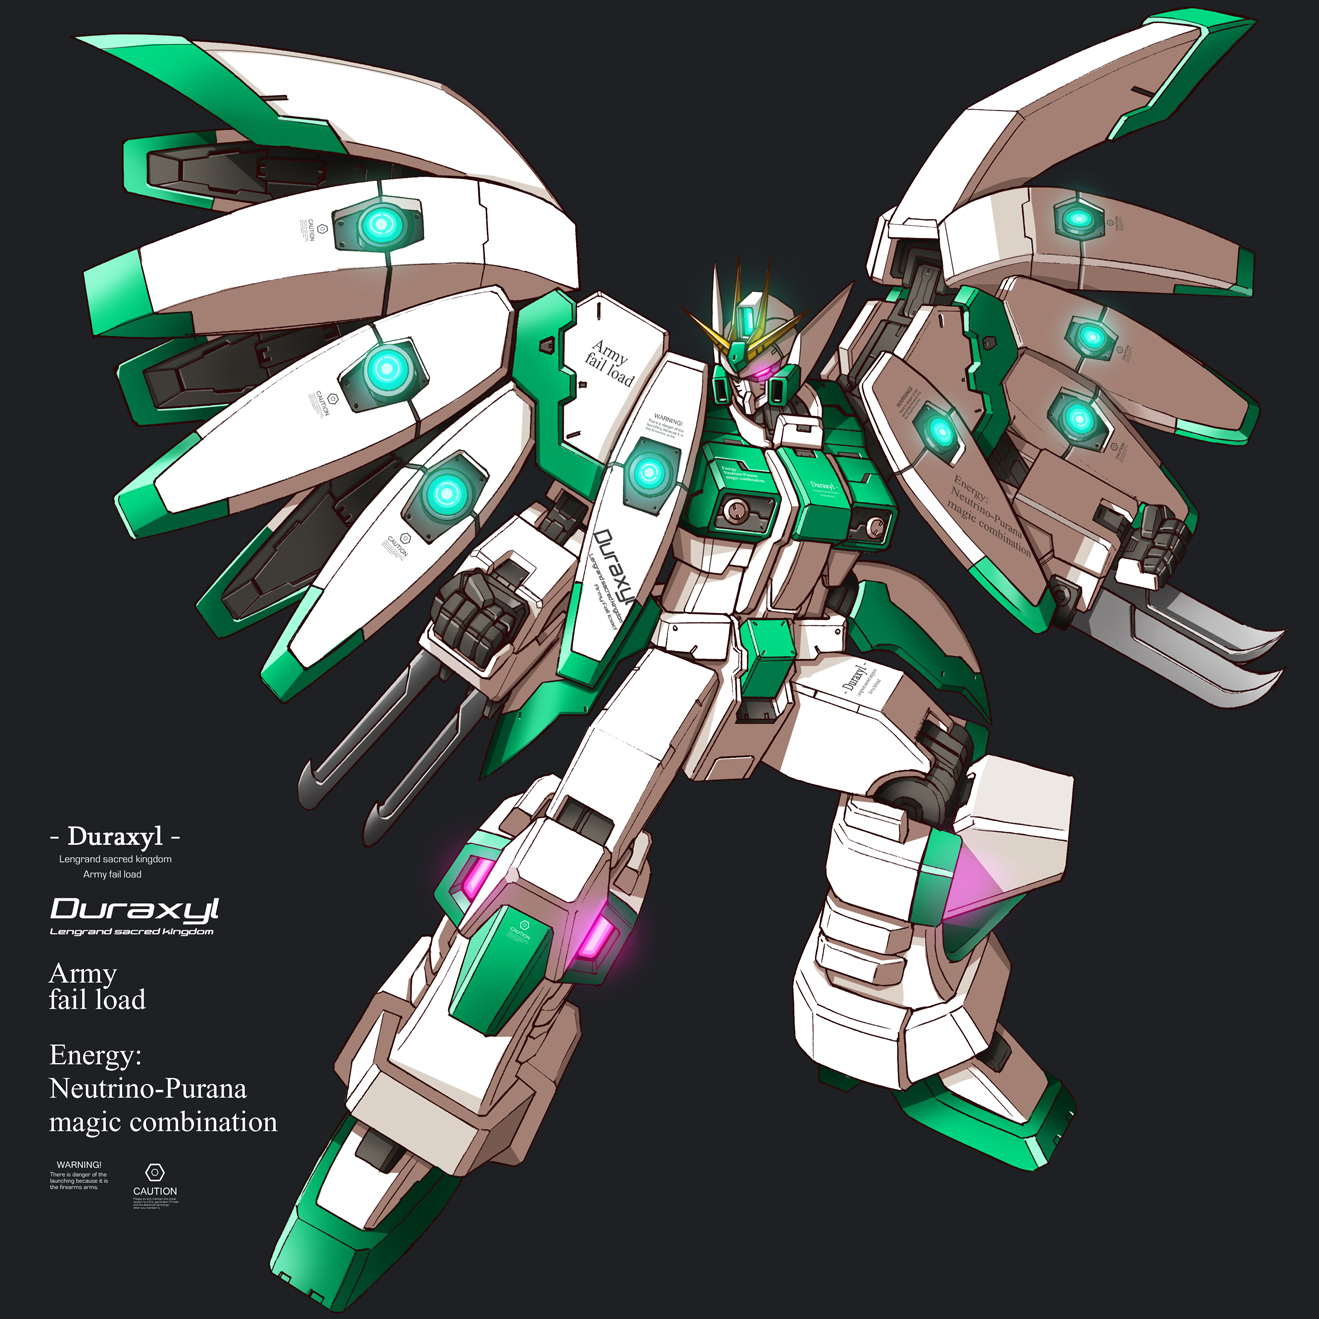 Anime 1319x1319 Duraxyl anime mechs Super Robot Taisen artwork digital art fan art simple background